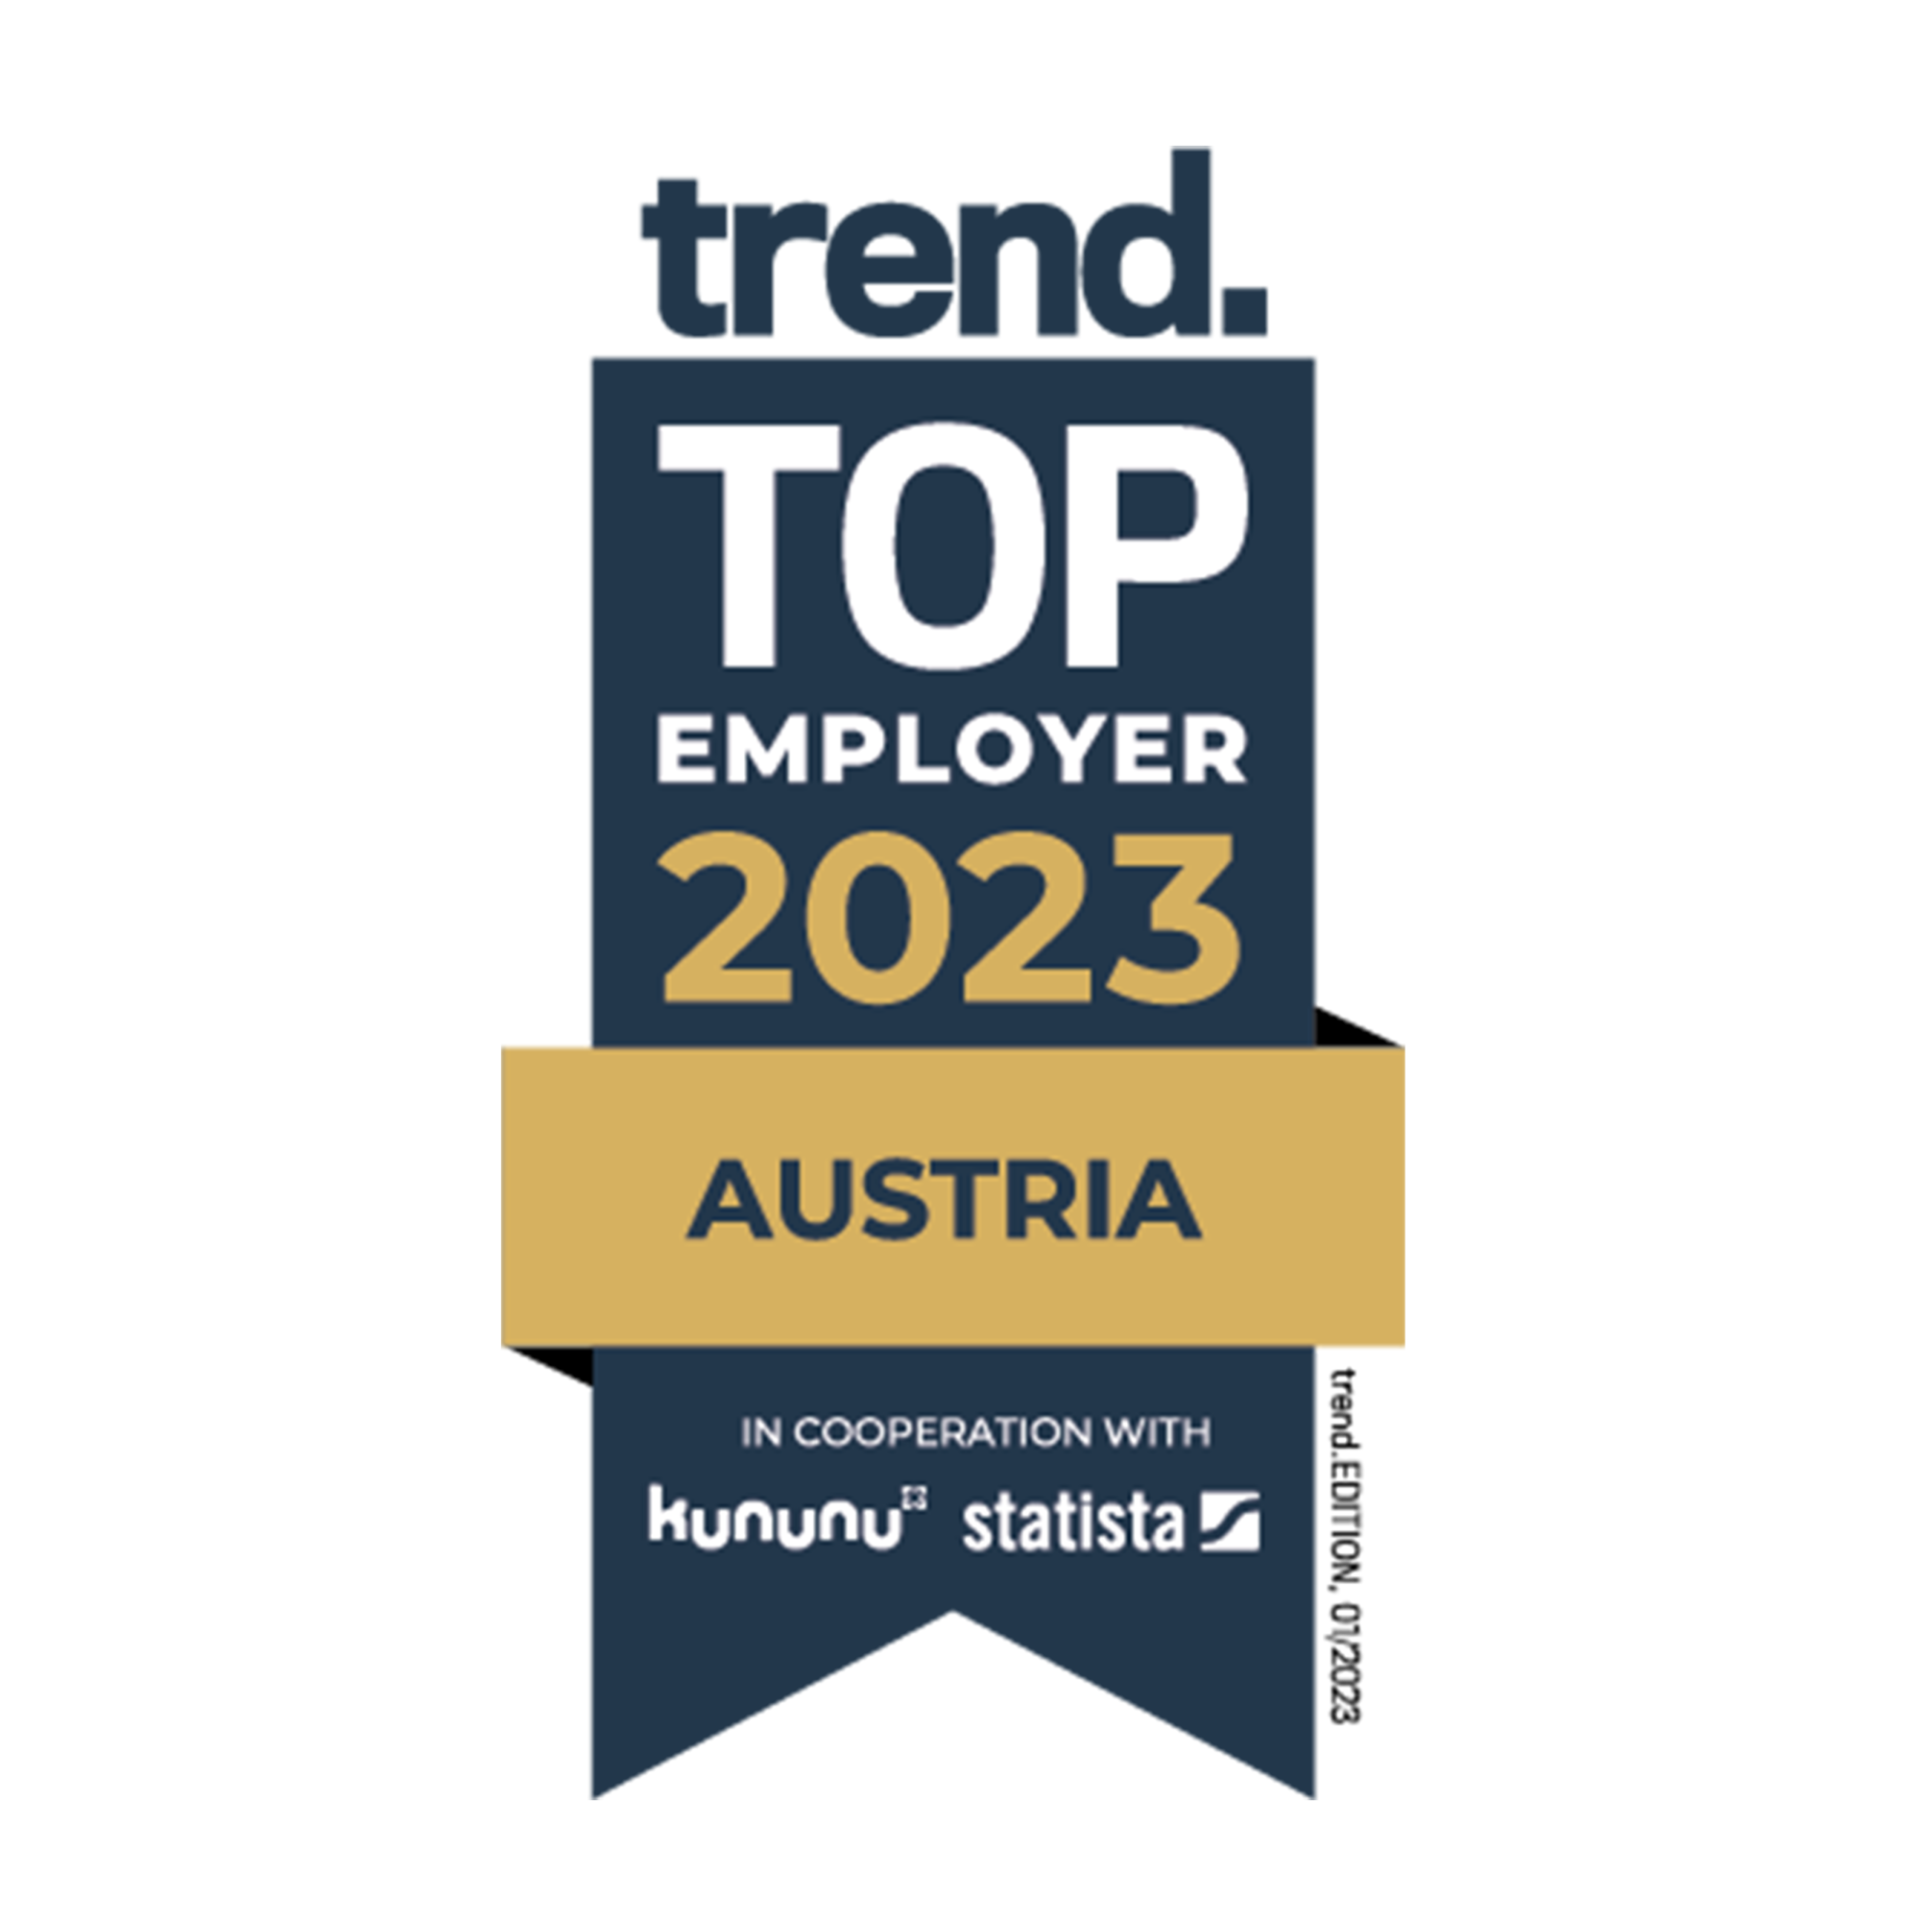 傑出僱主 2023 - 奧地利